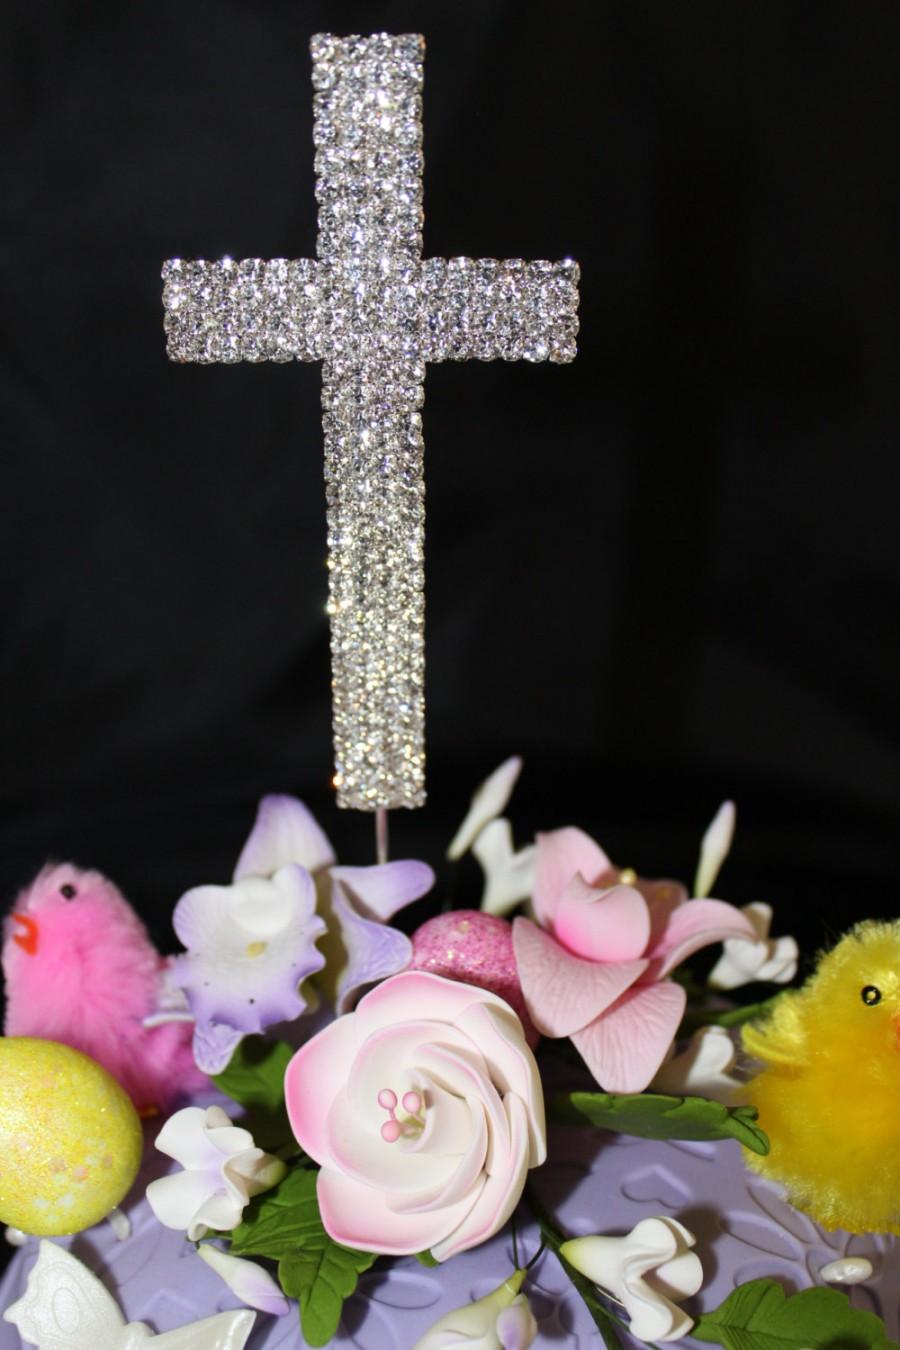 زفاف - CROSS CAKE TOPPER Rhinestone Cross, various styles,Floral Stick - Great for Baptisms,Communion, Easter, Weddings, Holidays 5"Cross,Total 10"